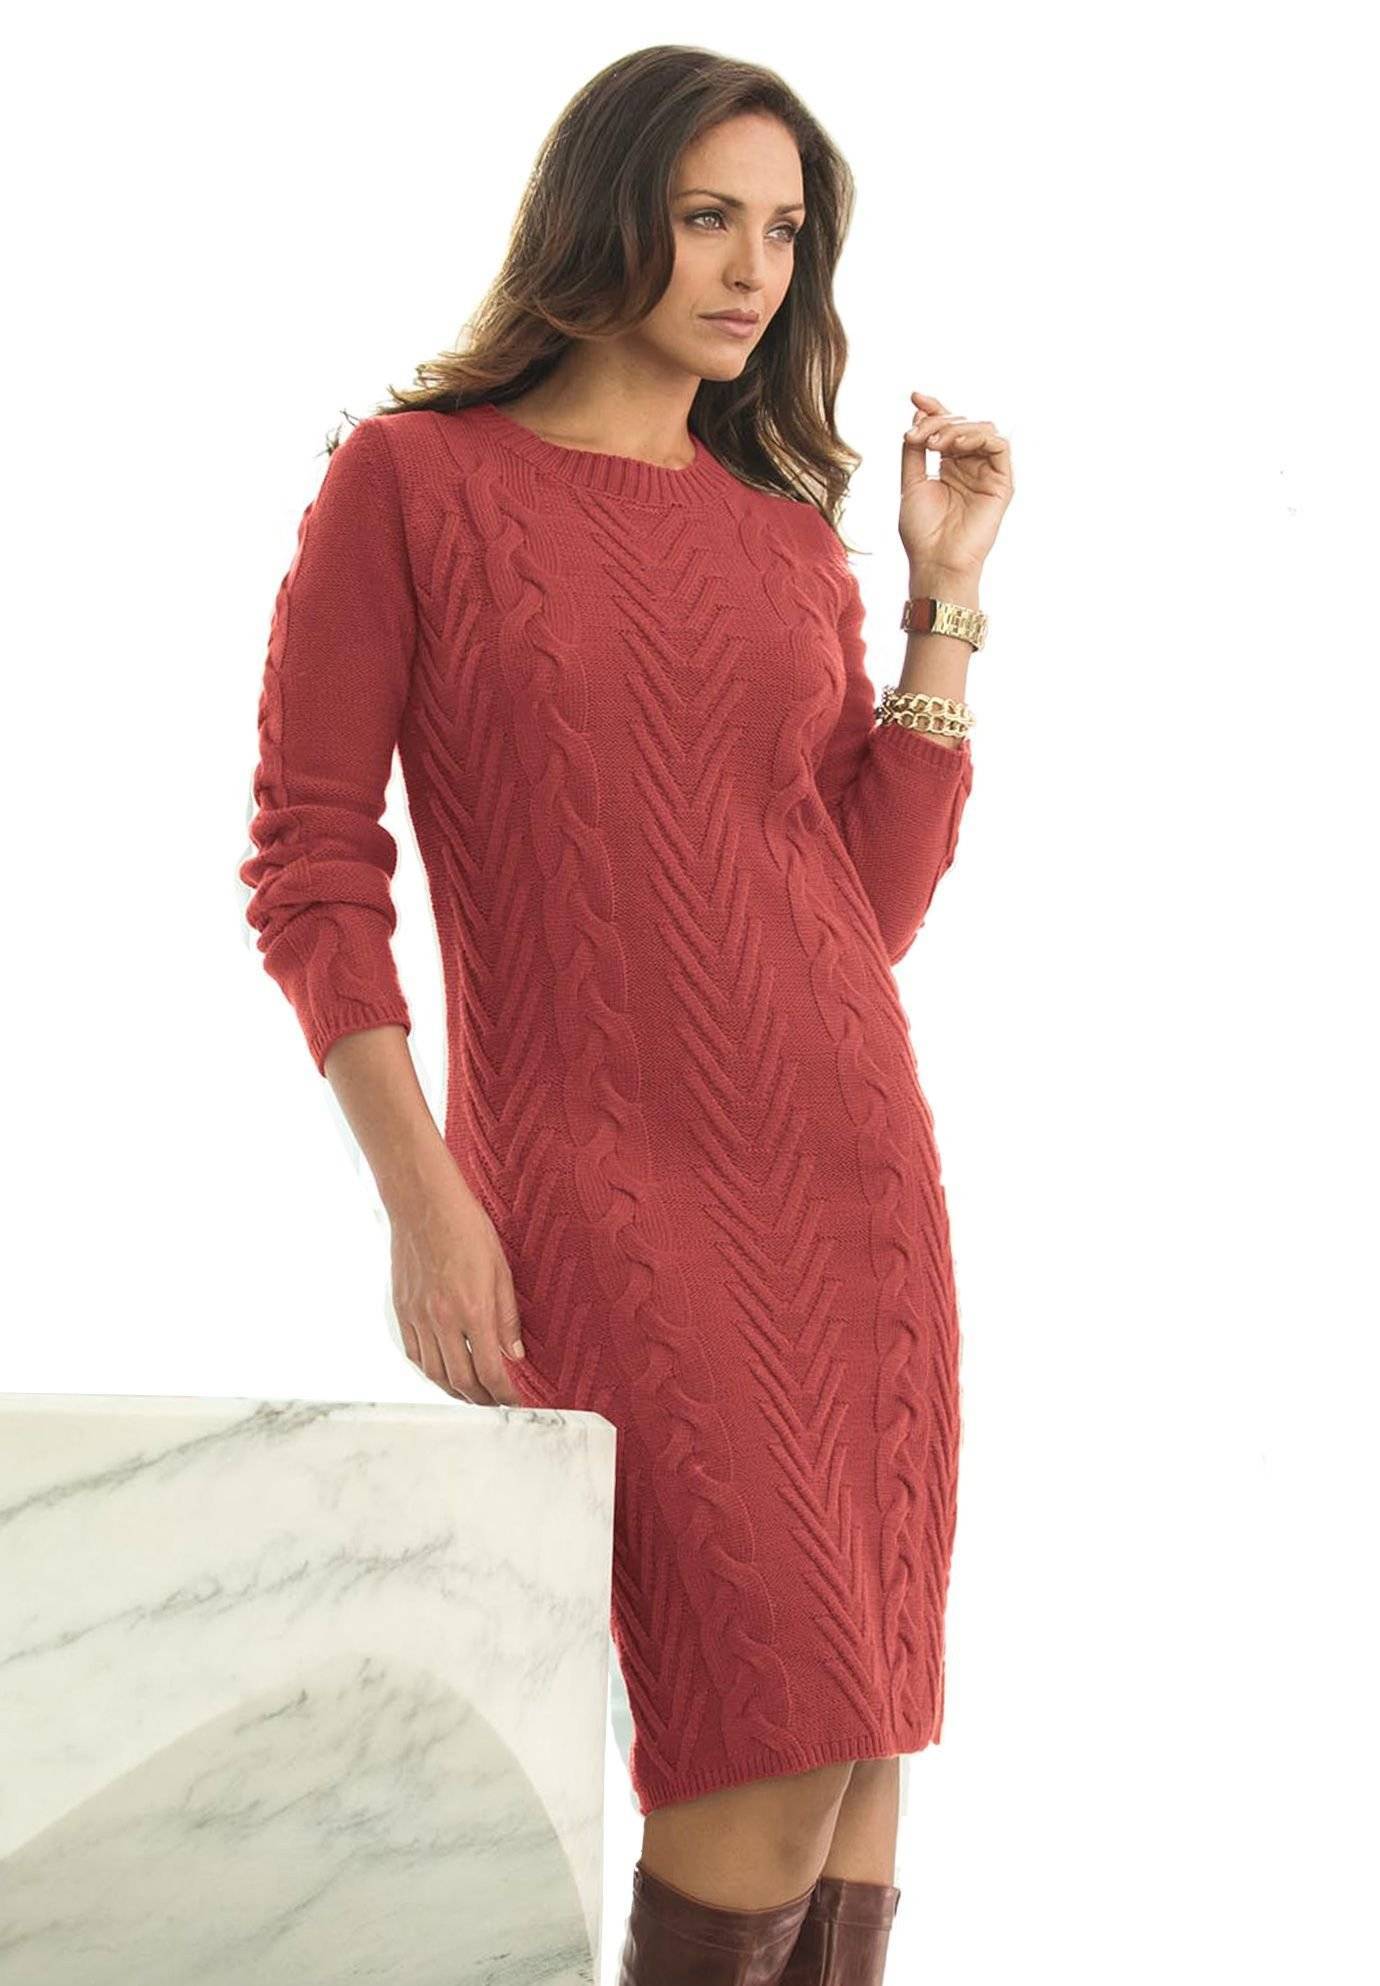 Ажурные платья крючком для полных женщин — 5 моделей со схемами и описанием